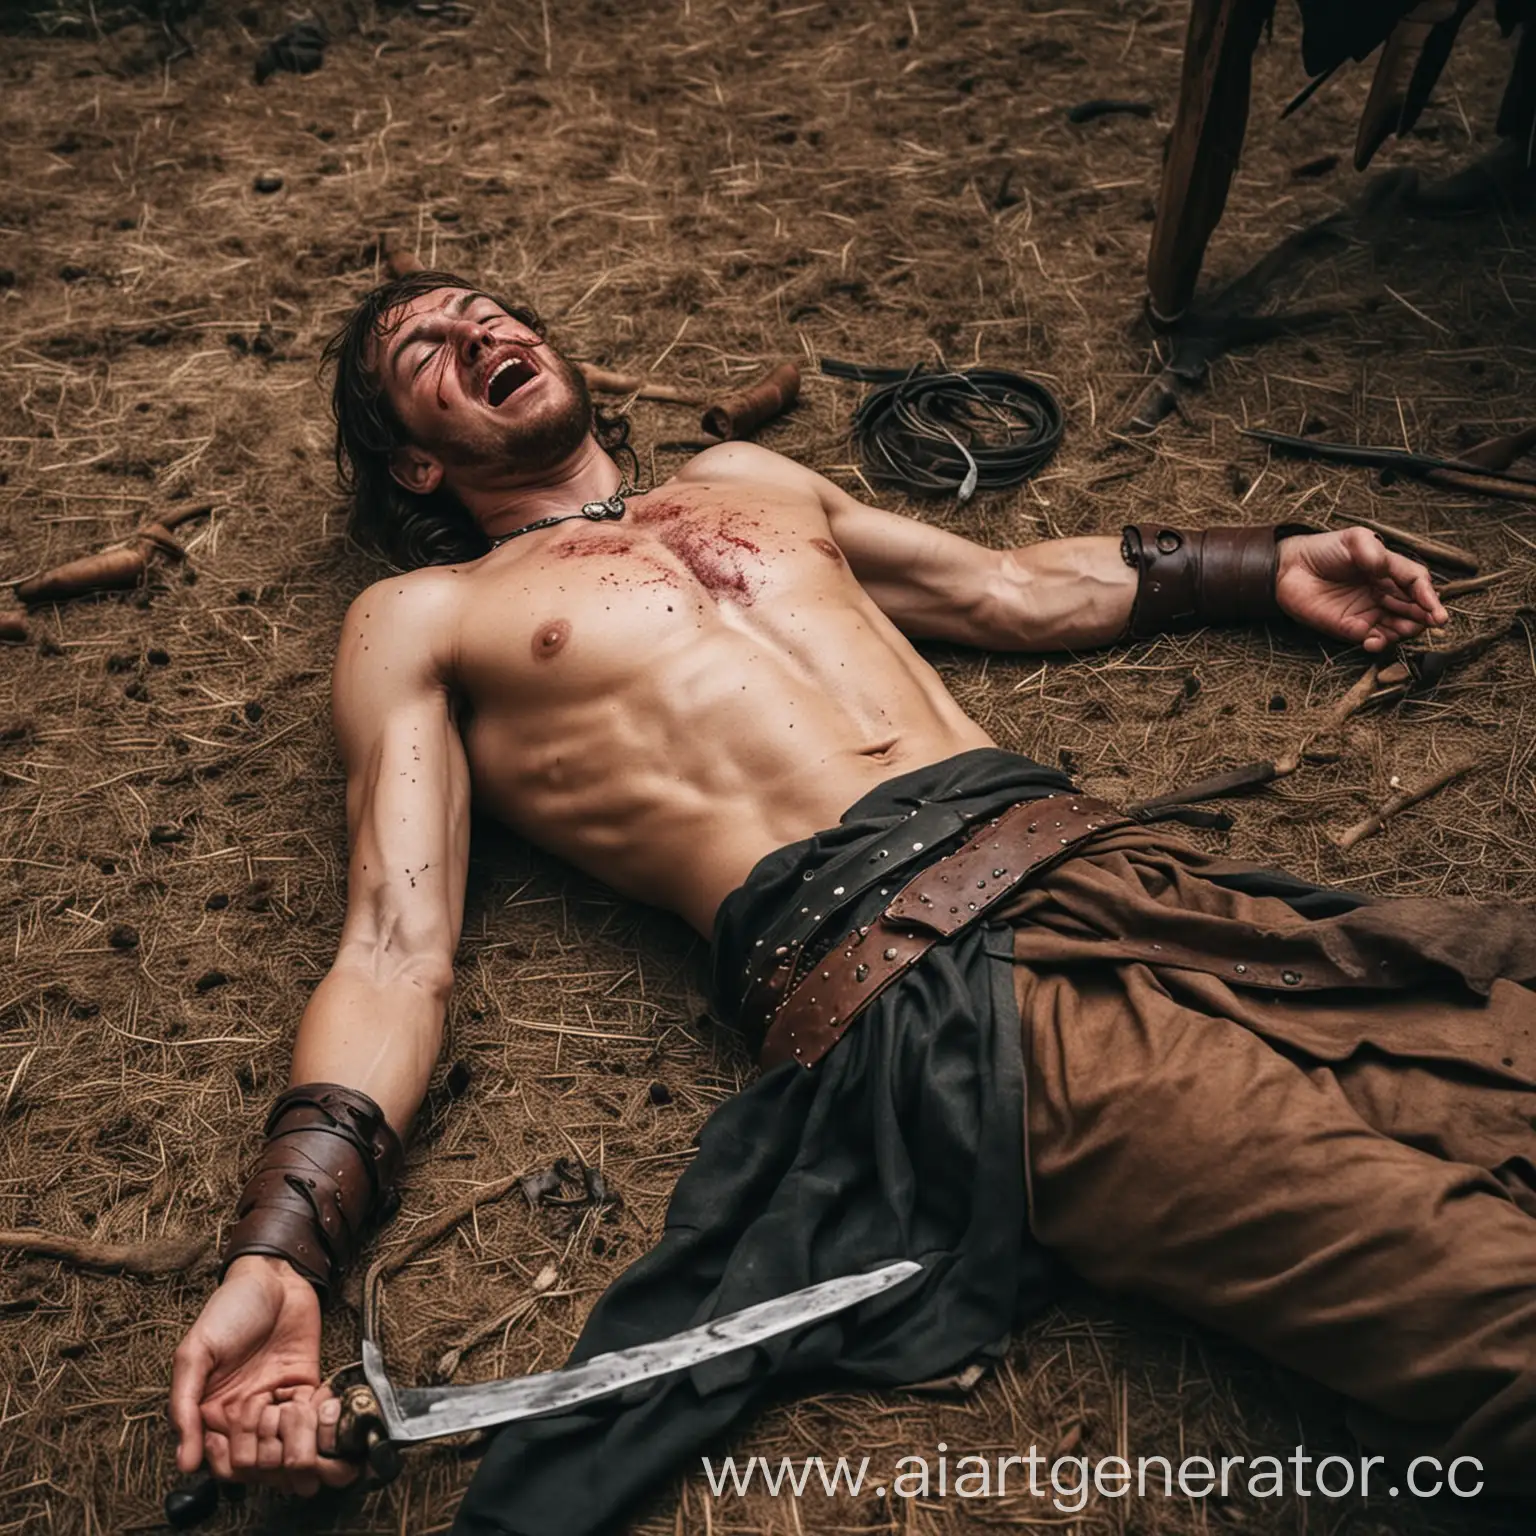 раненый в живот средневековый боец
